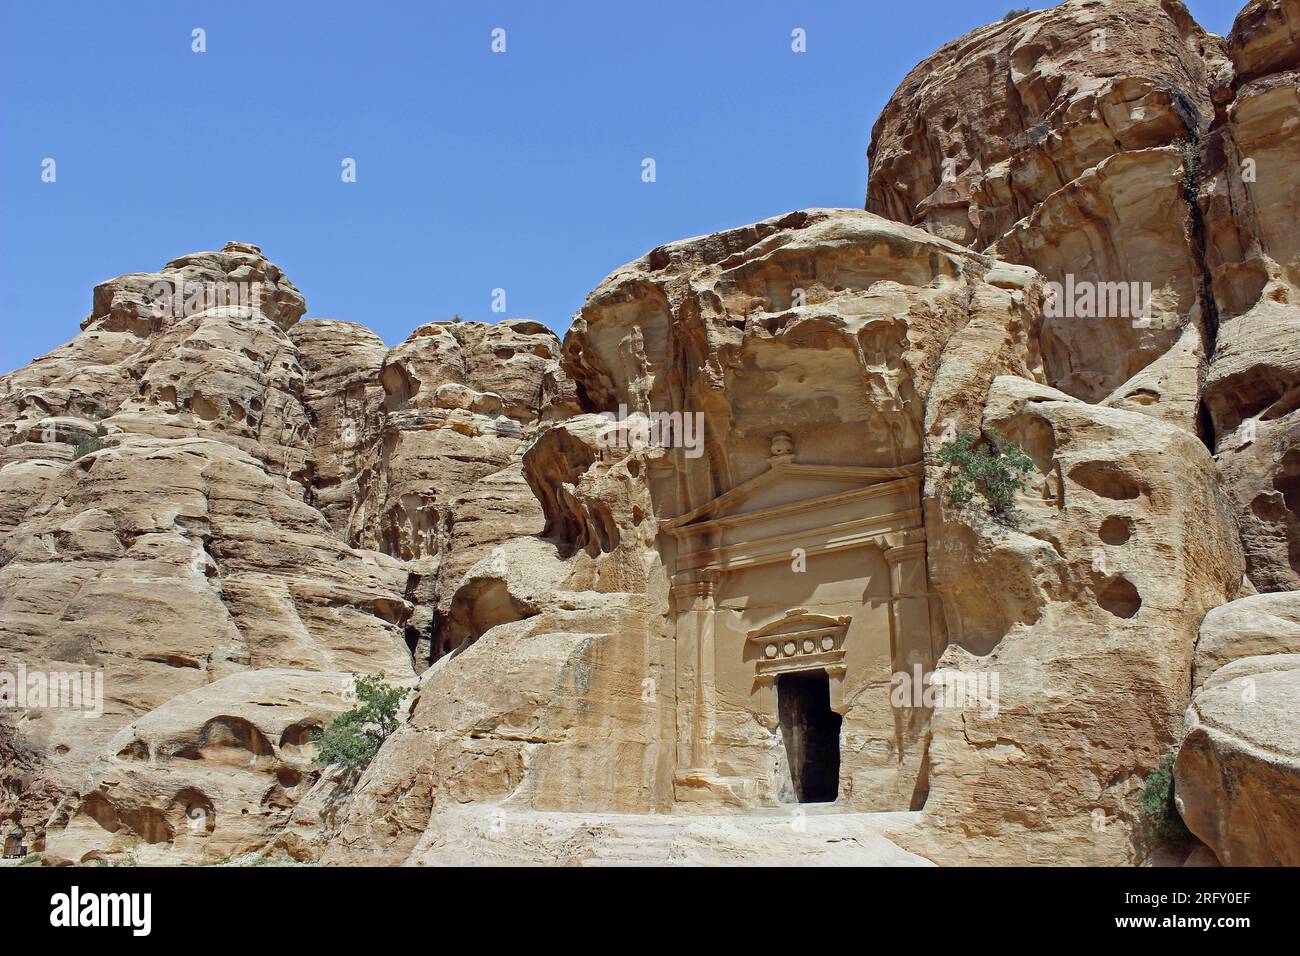 Tombeau nabatéen à l'entrée de Little Petra alias Siq al-Barid, Jordanie Banque D'Images